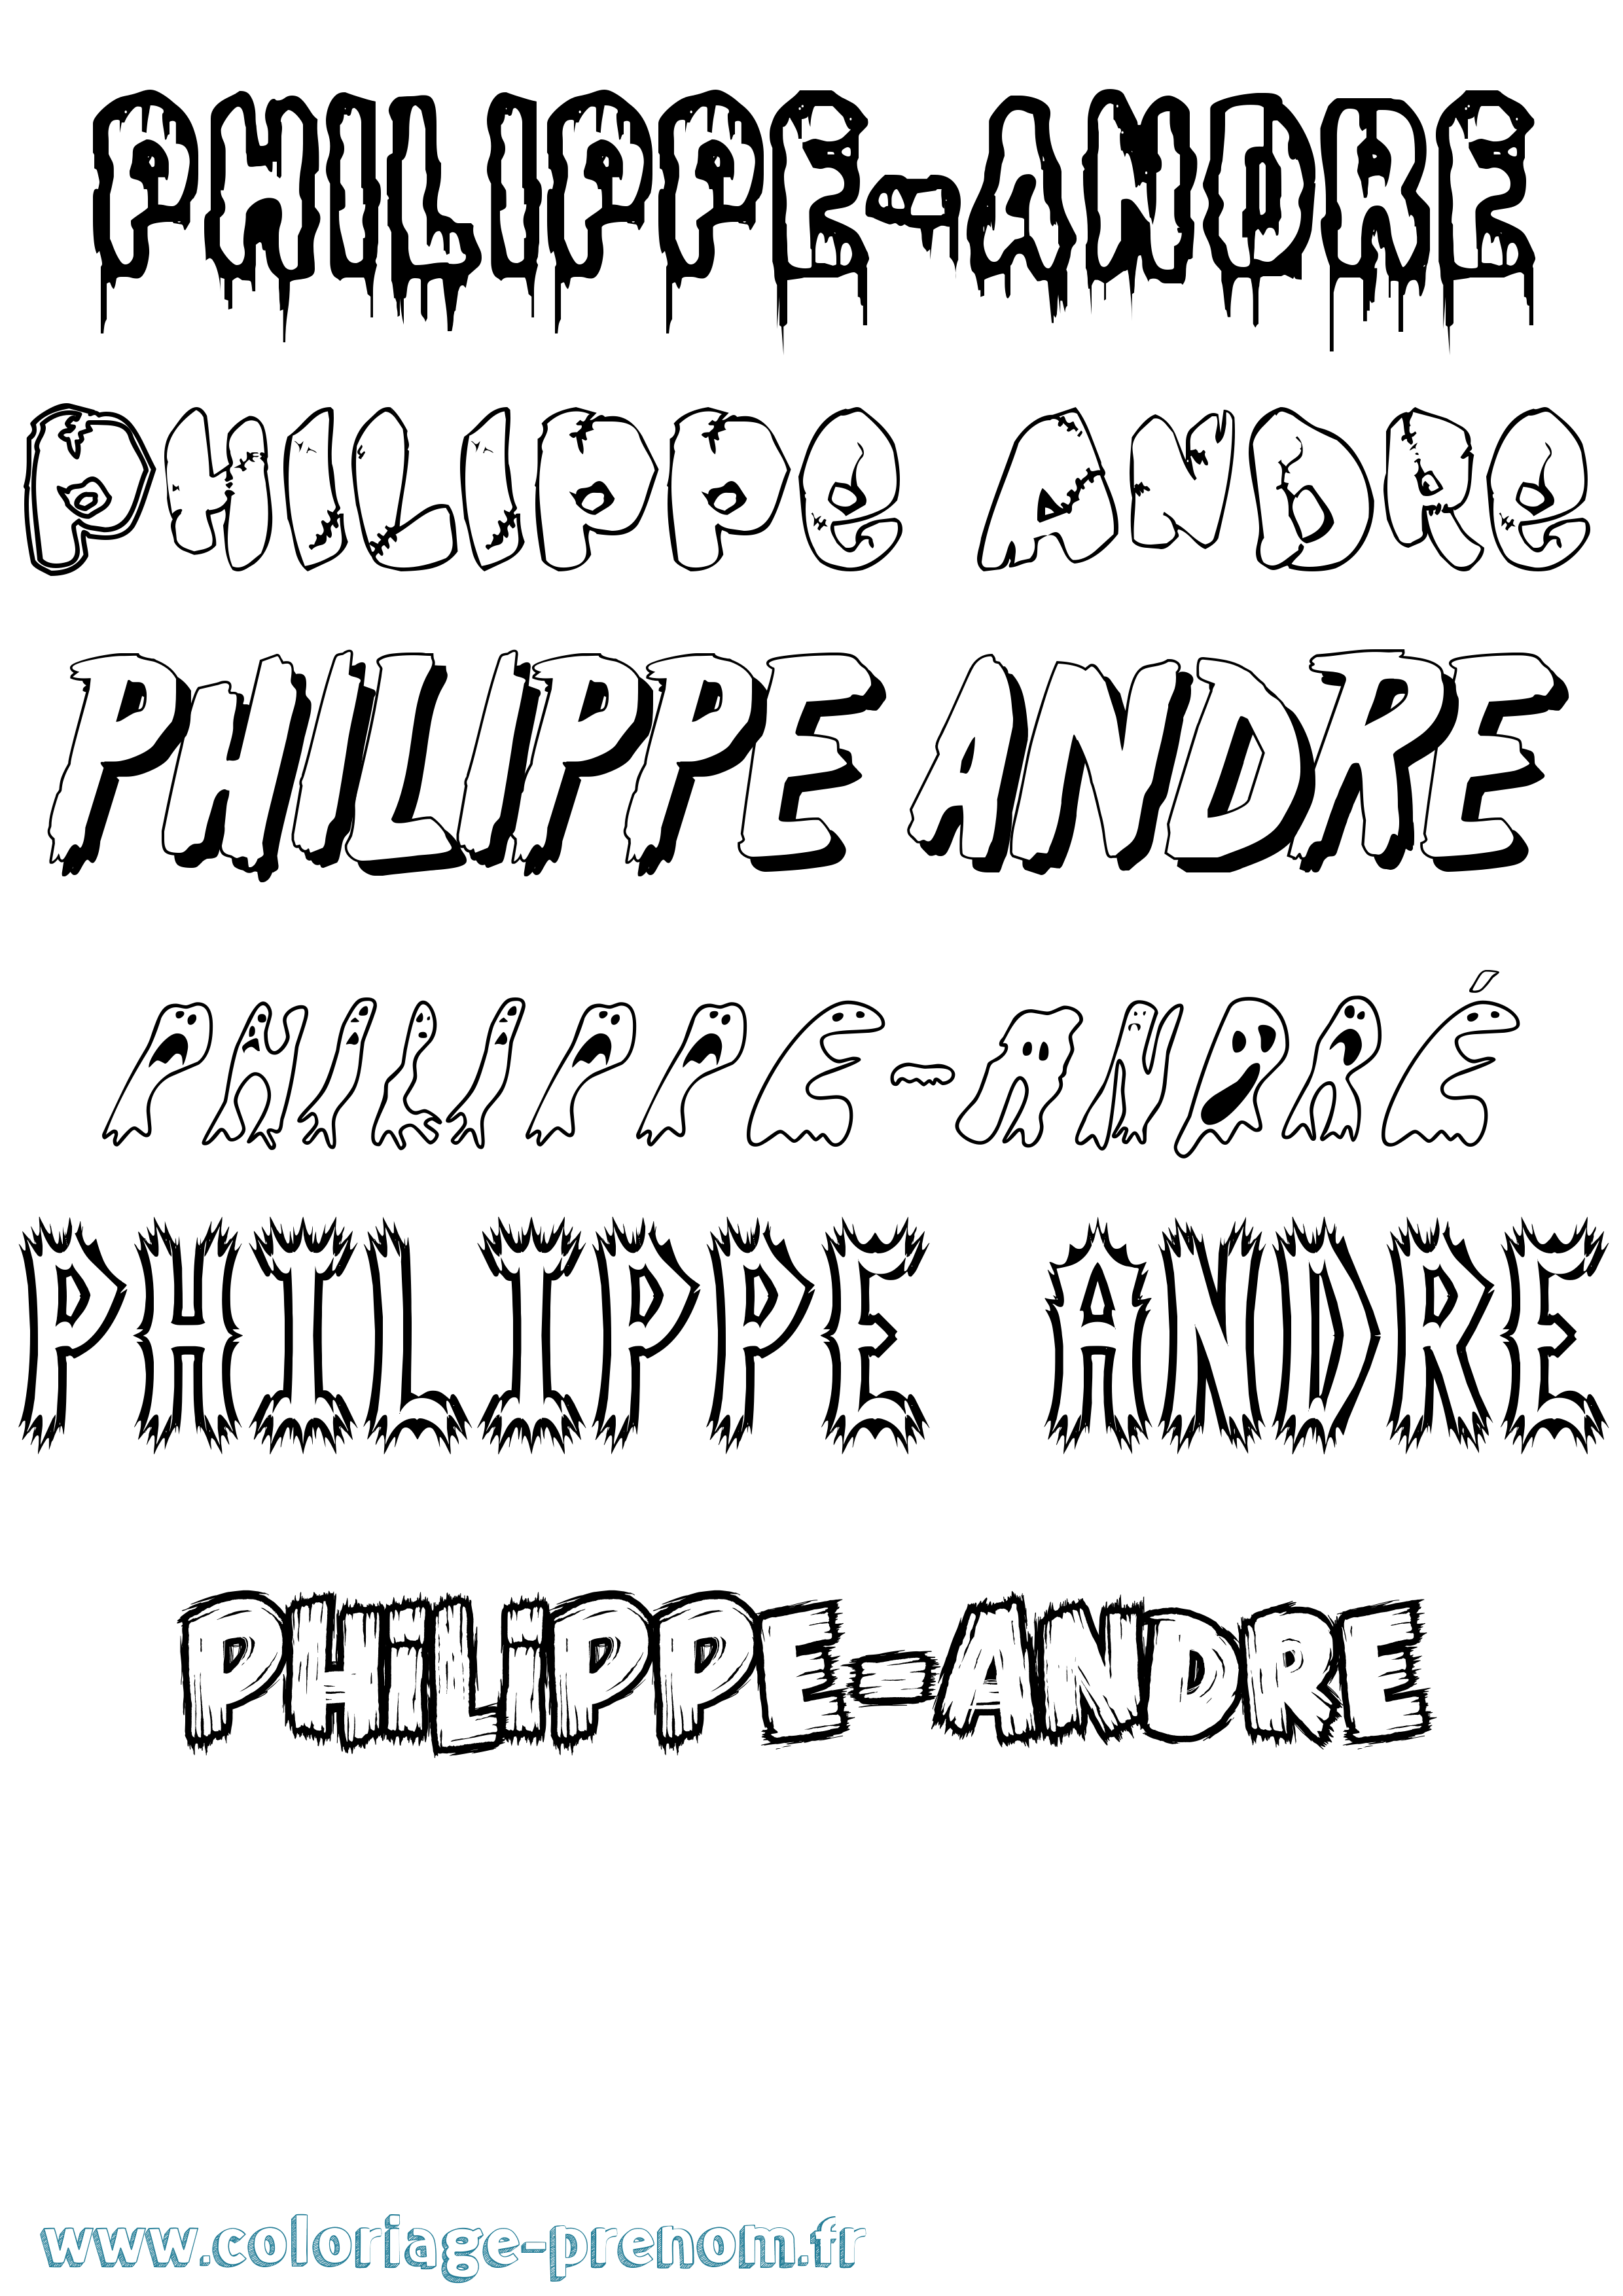 Coloriage prénom Philippe-André Frisson